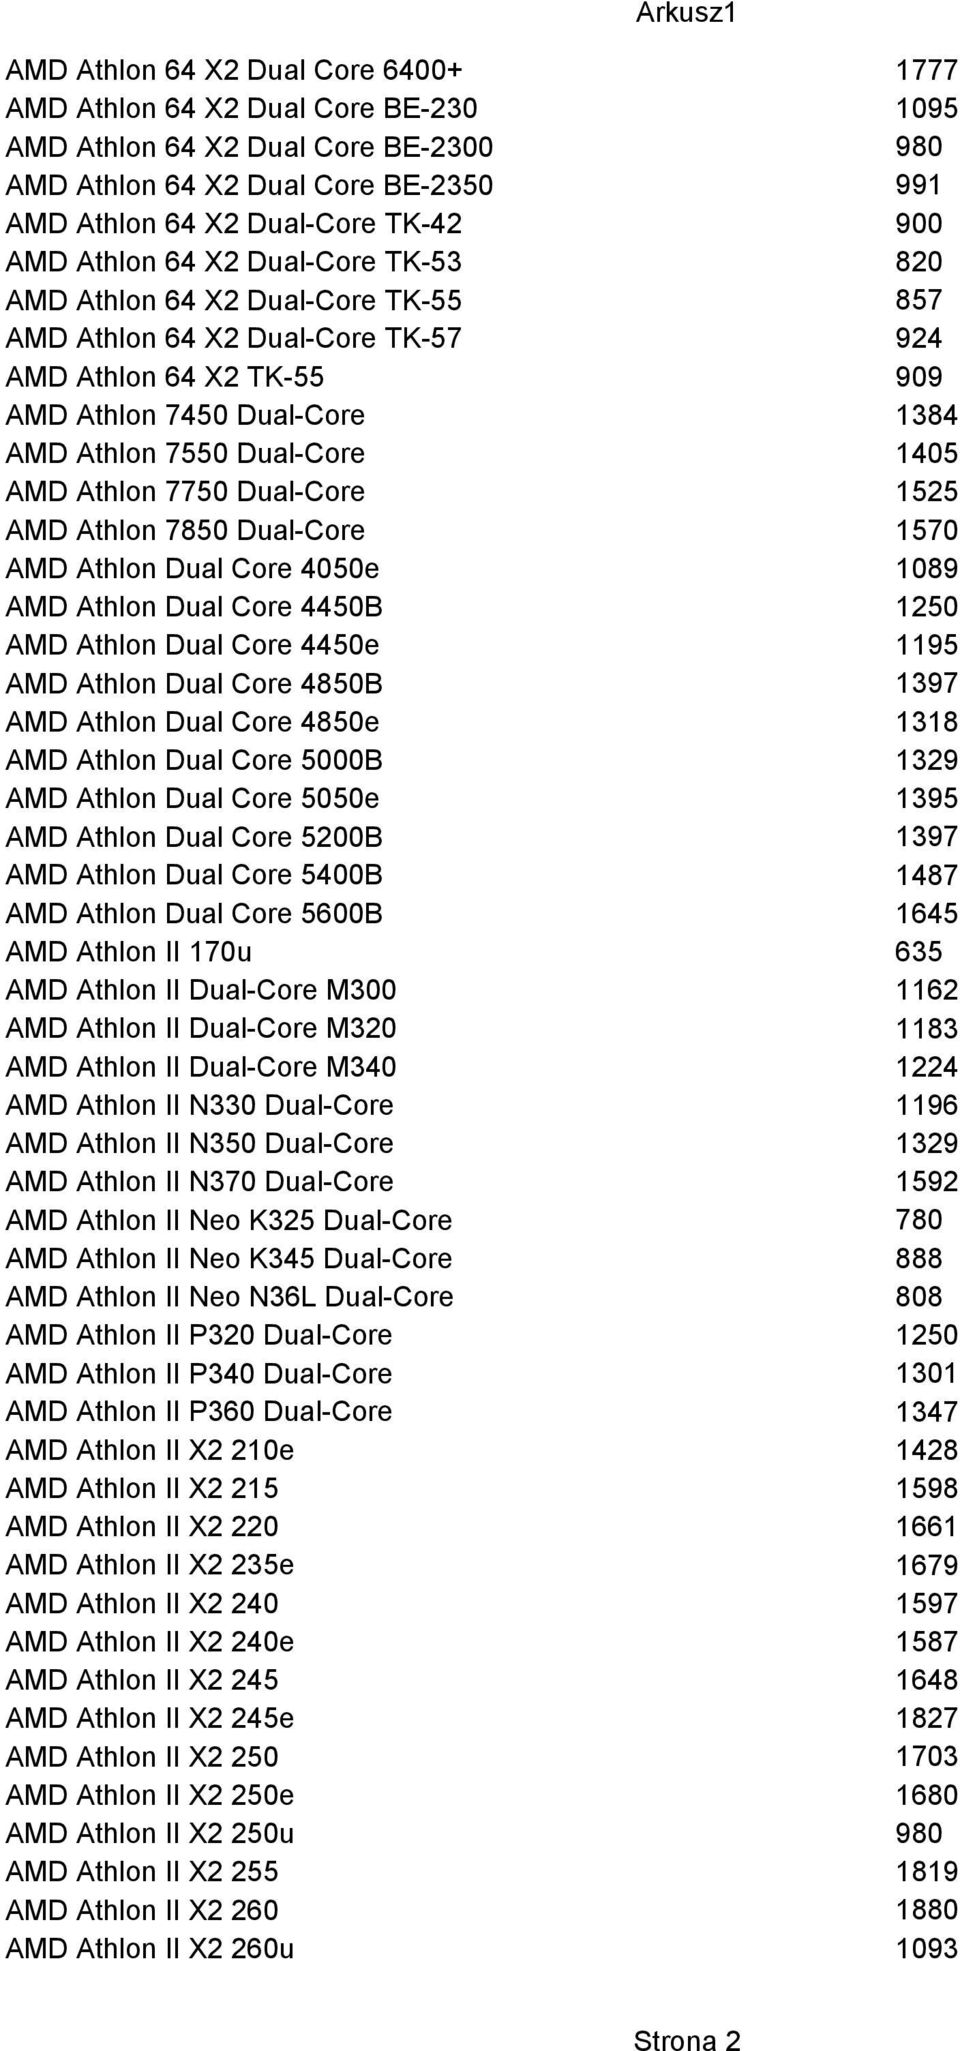 AMD Athlon Dual Core 4050e AMD Athlon Dual Core 4450B AMD Athlon Dual Core 4450e AMD Athlon Dual Core 4850B AMD Athlon Dual Core 4850e AMD Athlon Dual Core 5000B AMD Athlon Dual Core 5050e AMD Athlon